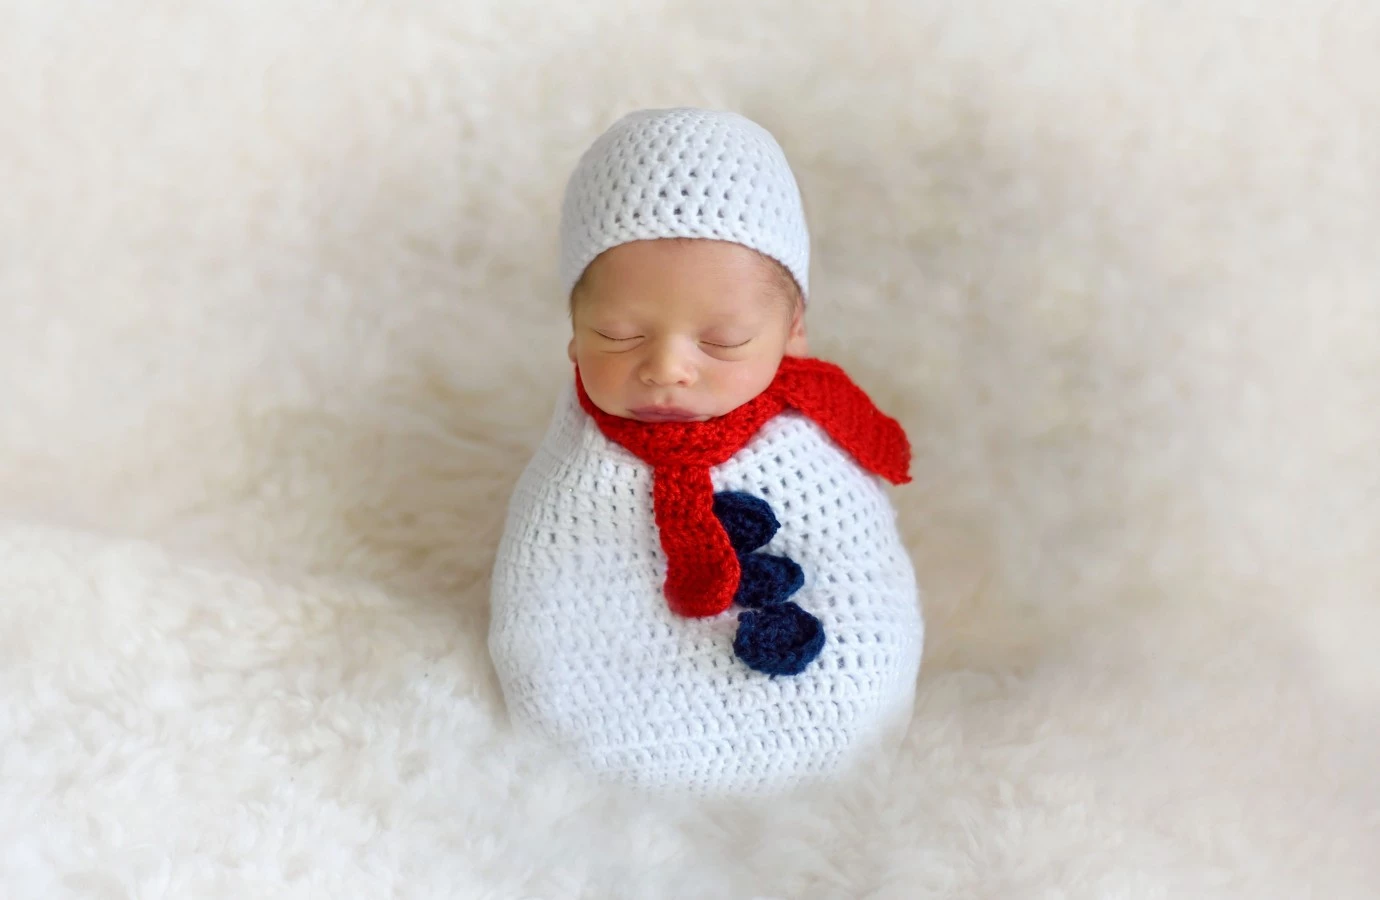 fotograf poznan anna-wecel-photography portfolio zdjecia zdjecia noworodkow sesje noworodkowe niemowlę